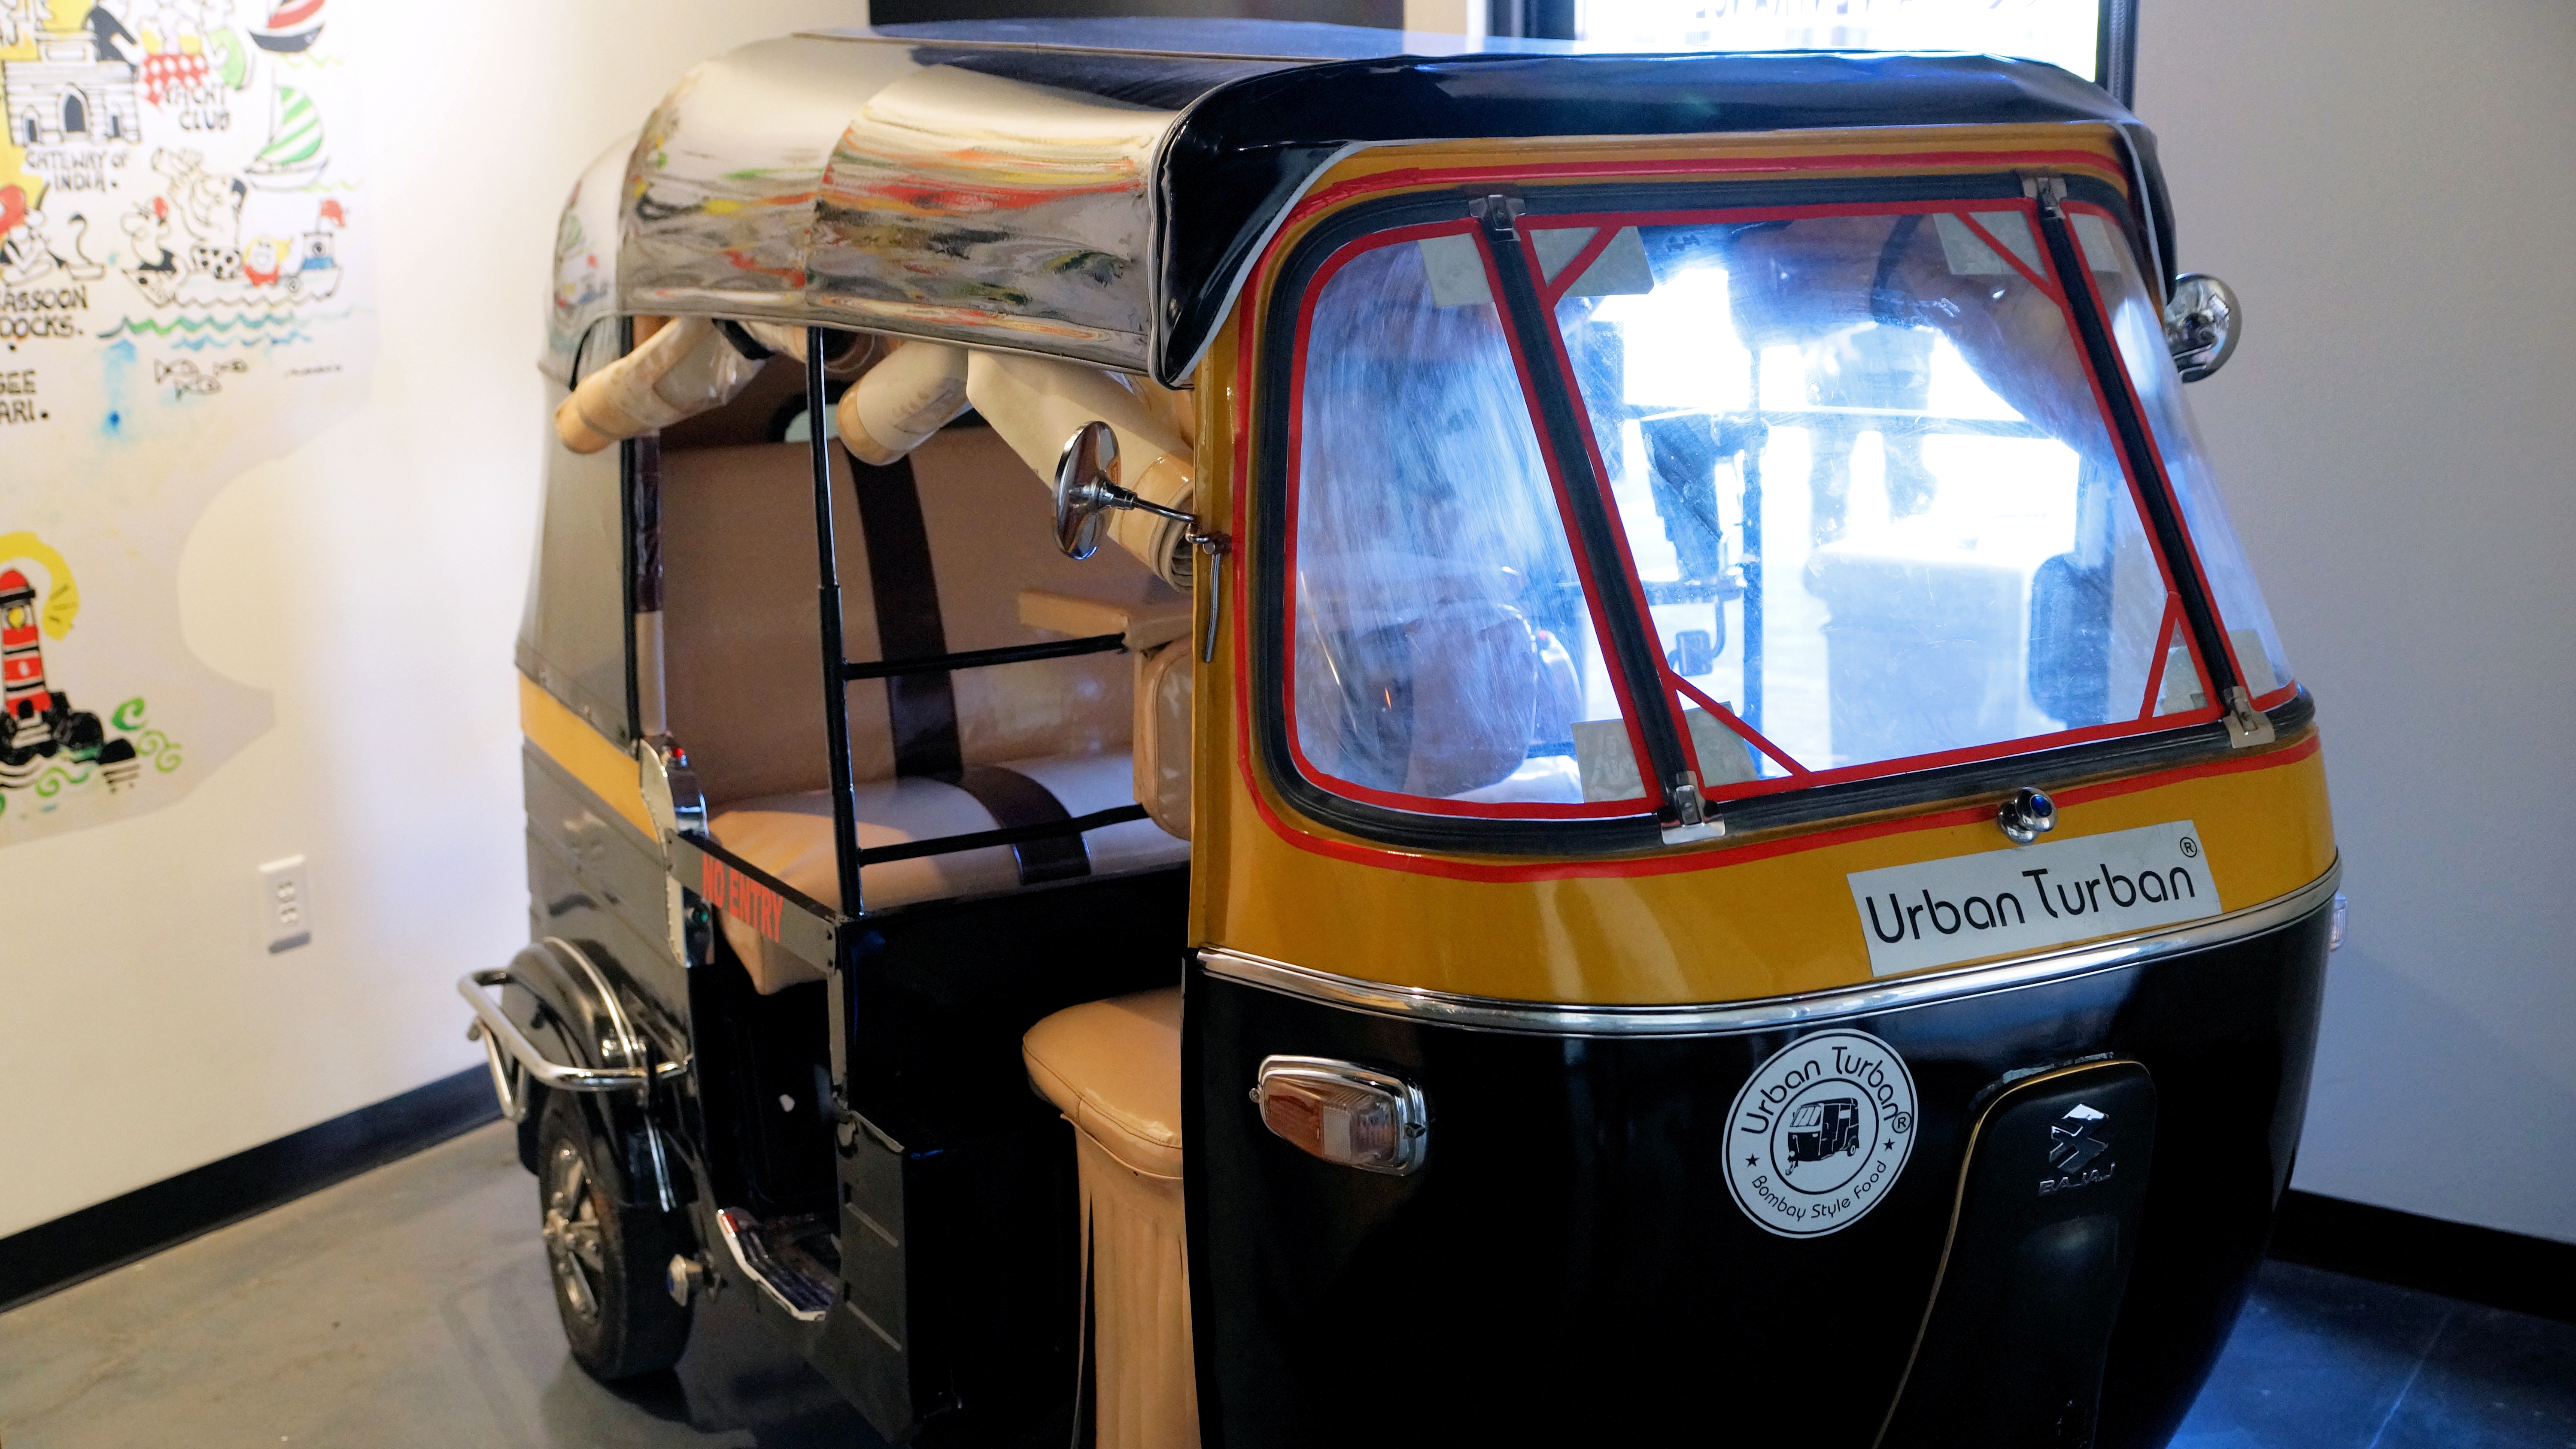 "Turbie," the Urban Turban rickshaw